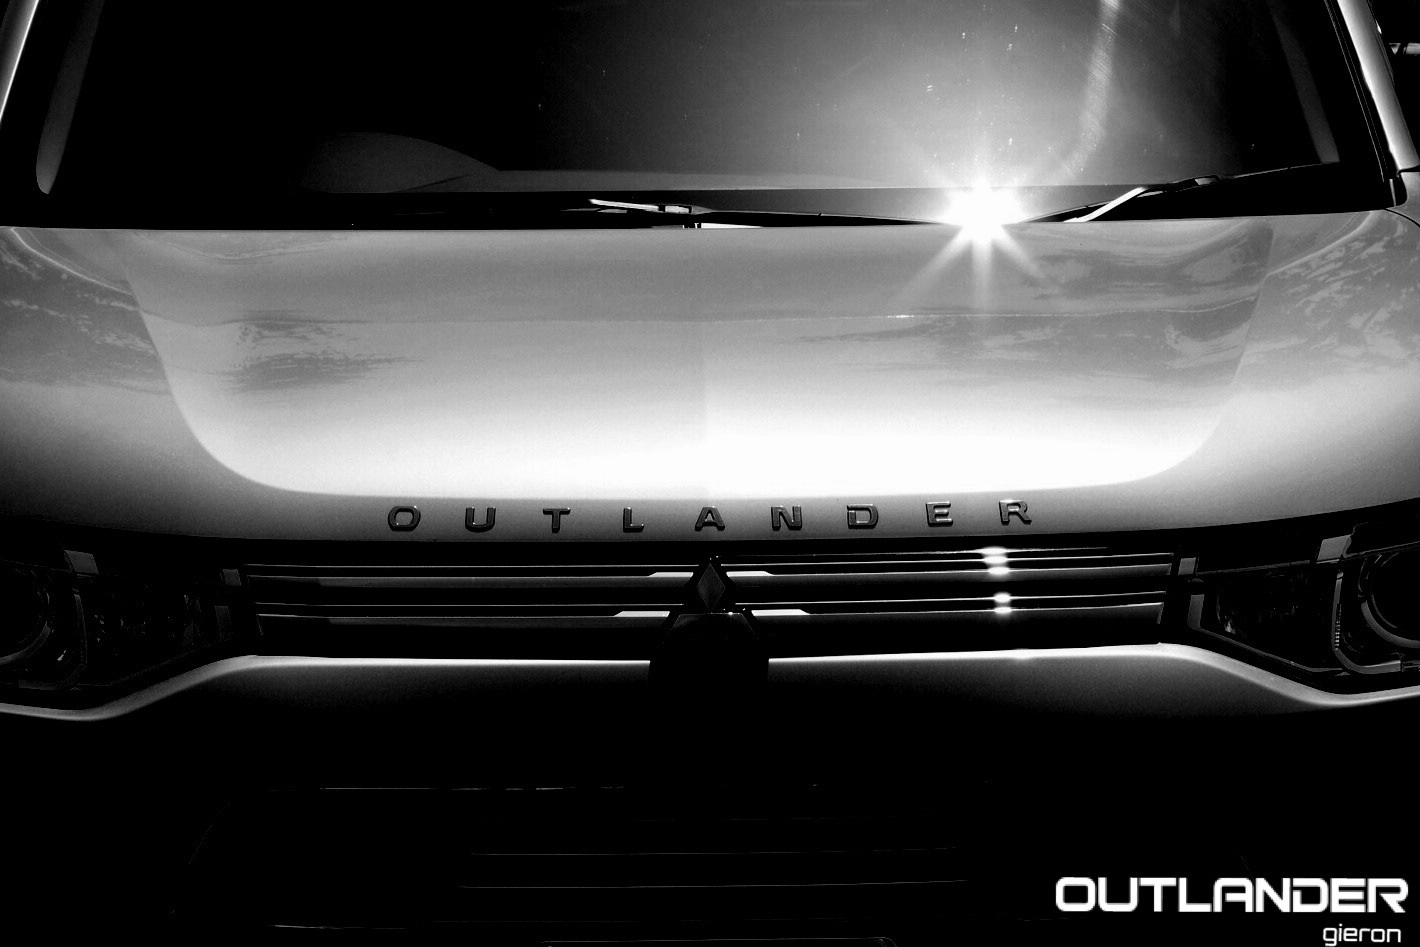 Mitsubishi outlander phev